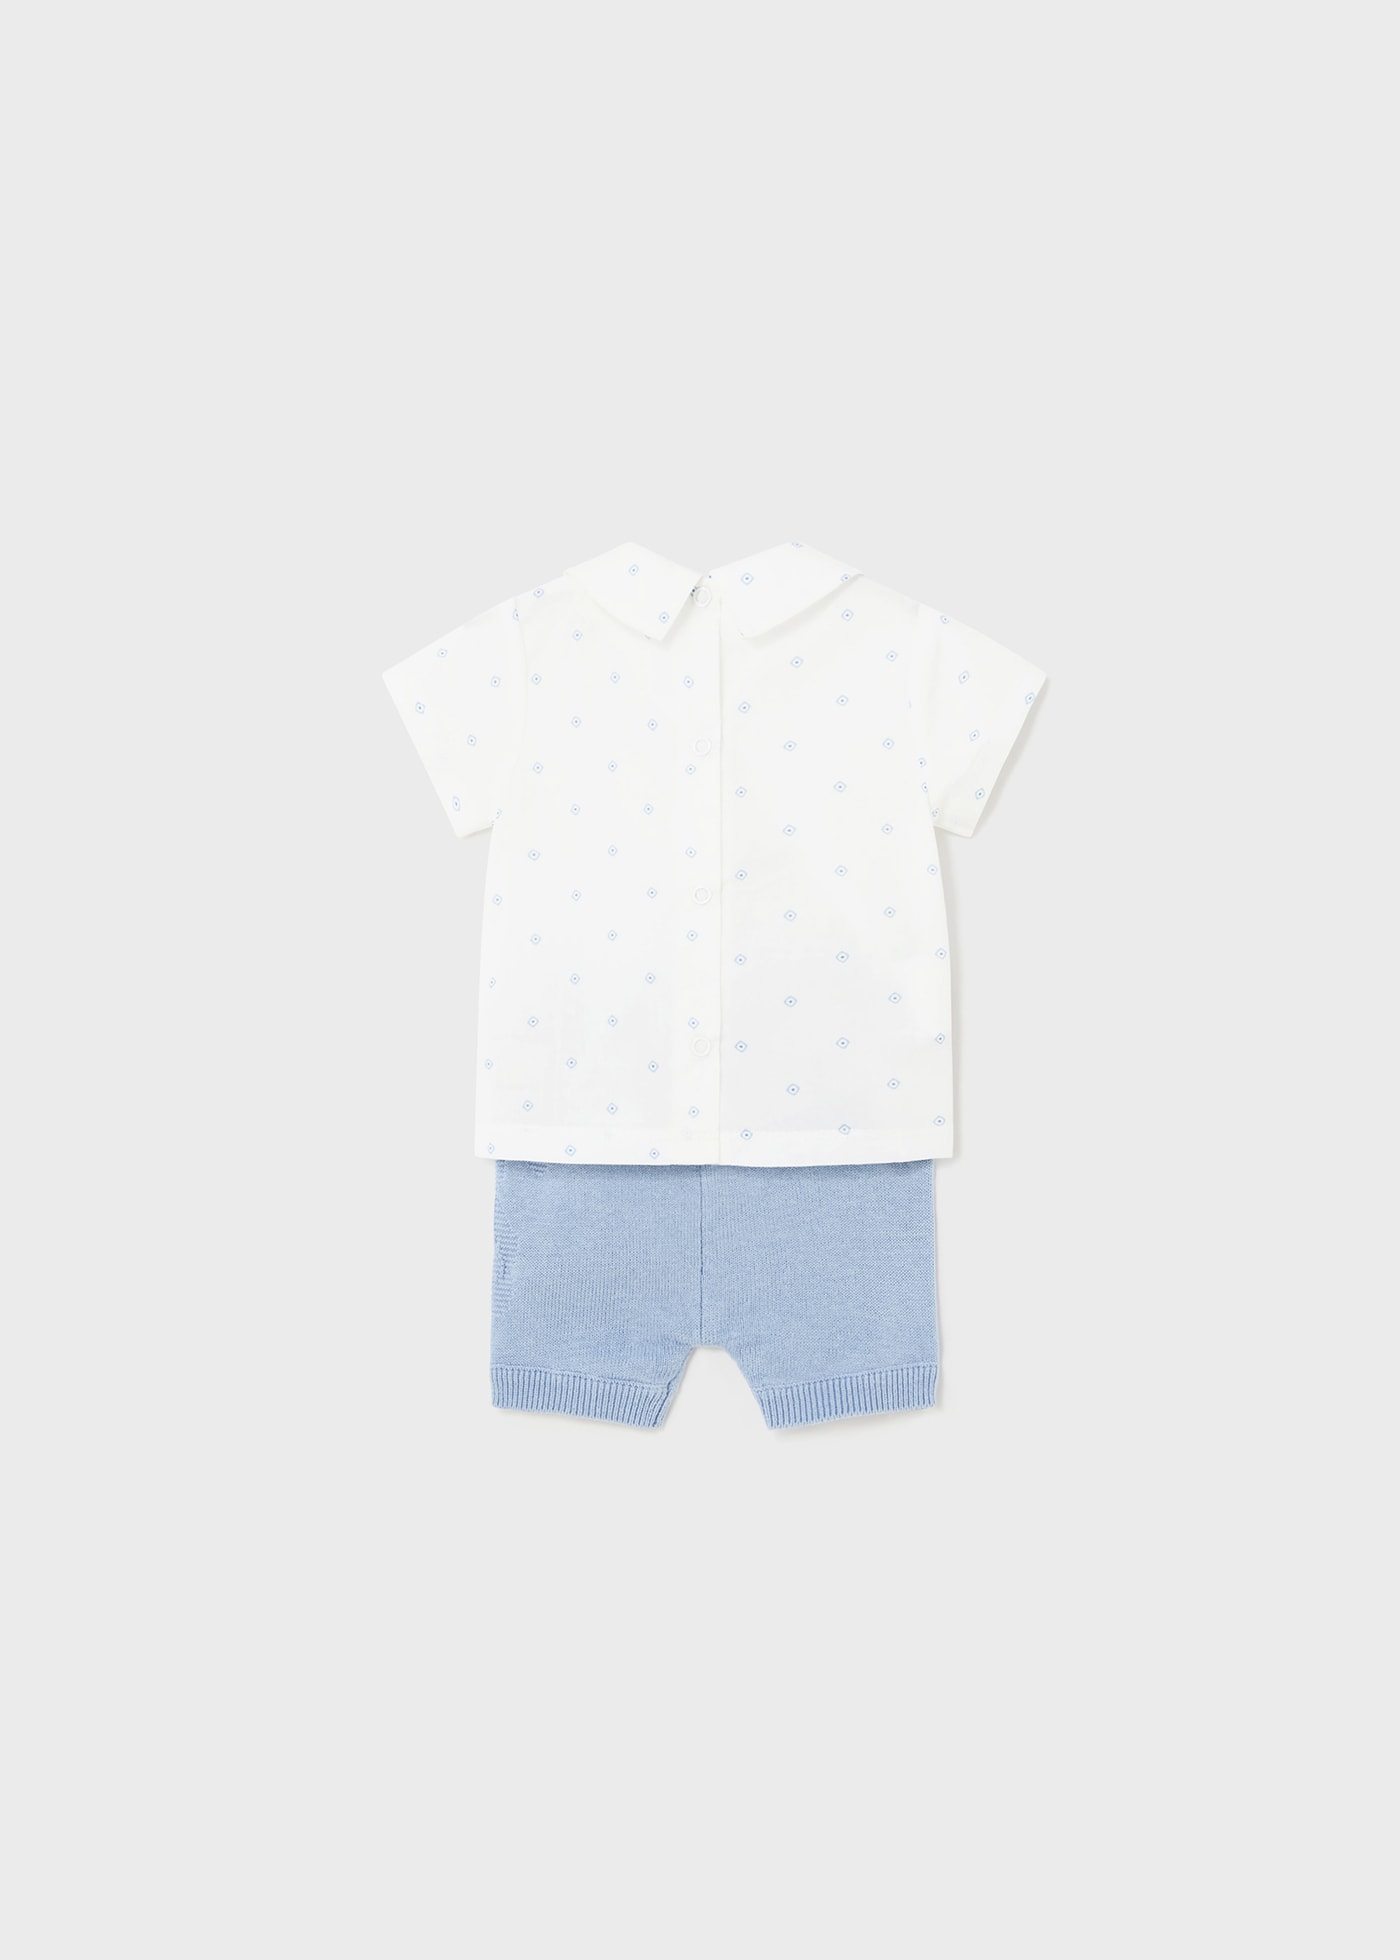 Completo 2 pezzi shorts tricot neonato